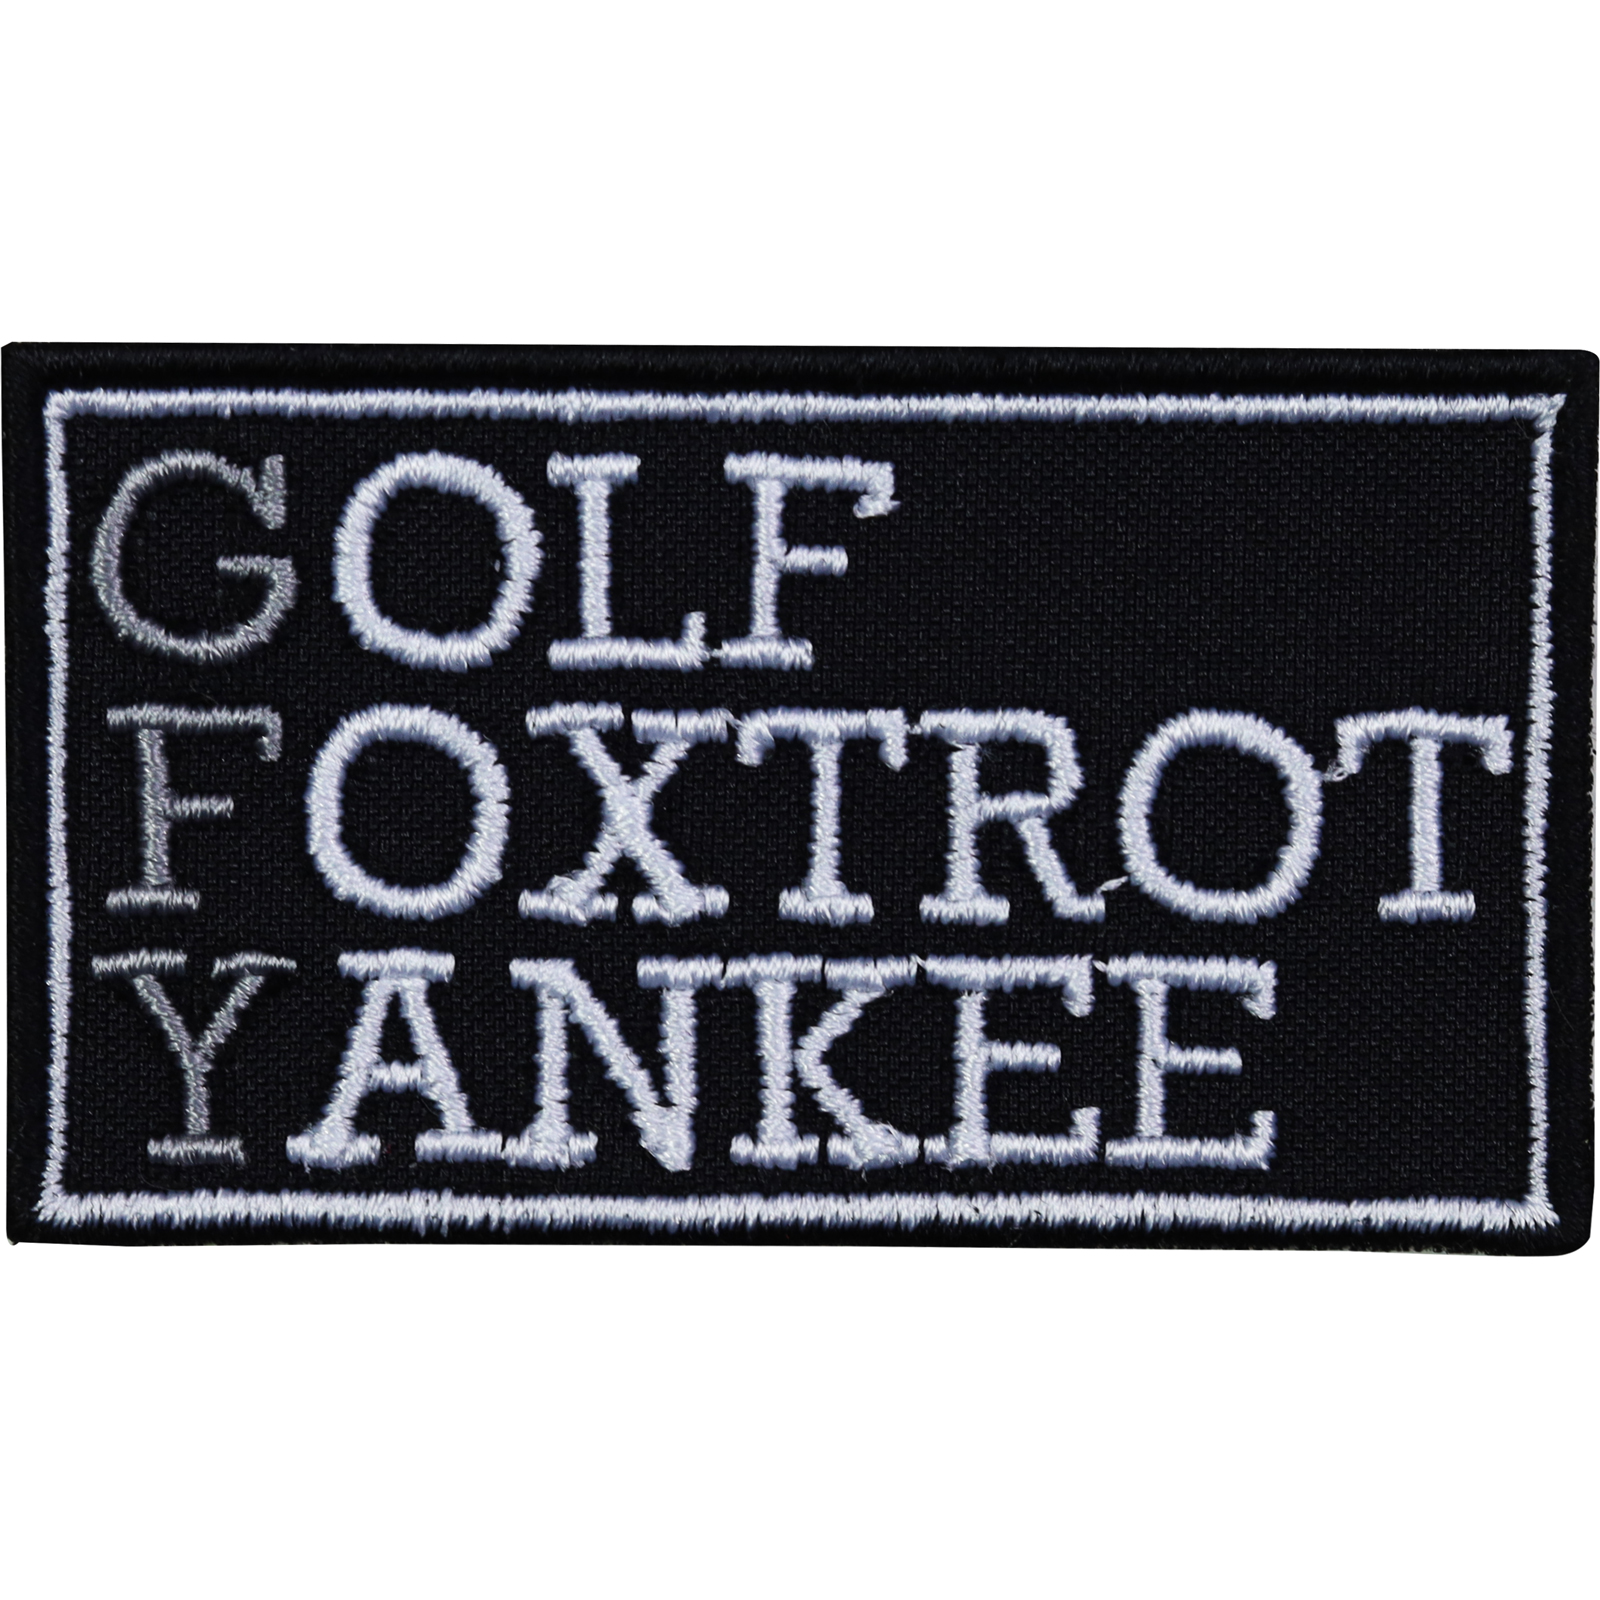 Golf Foxtrot Yankee - Patch